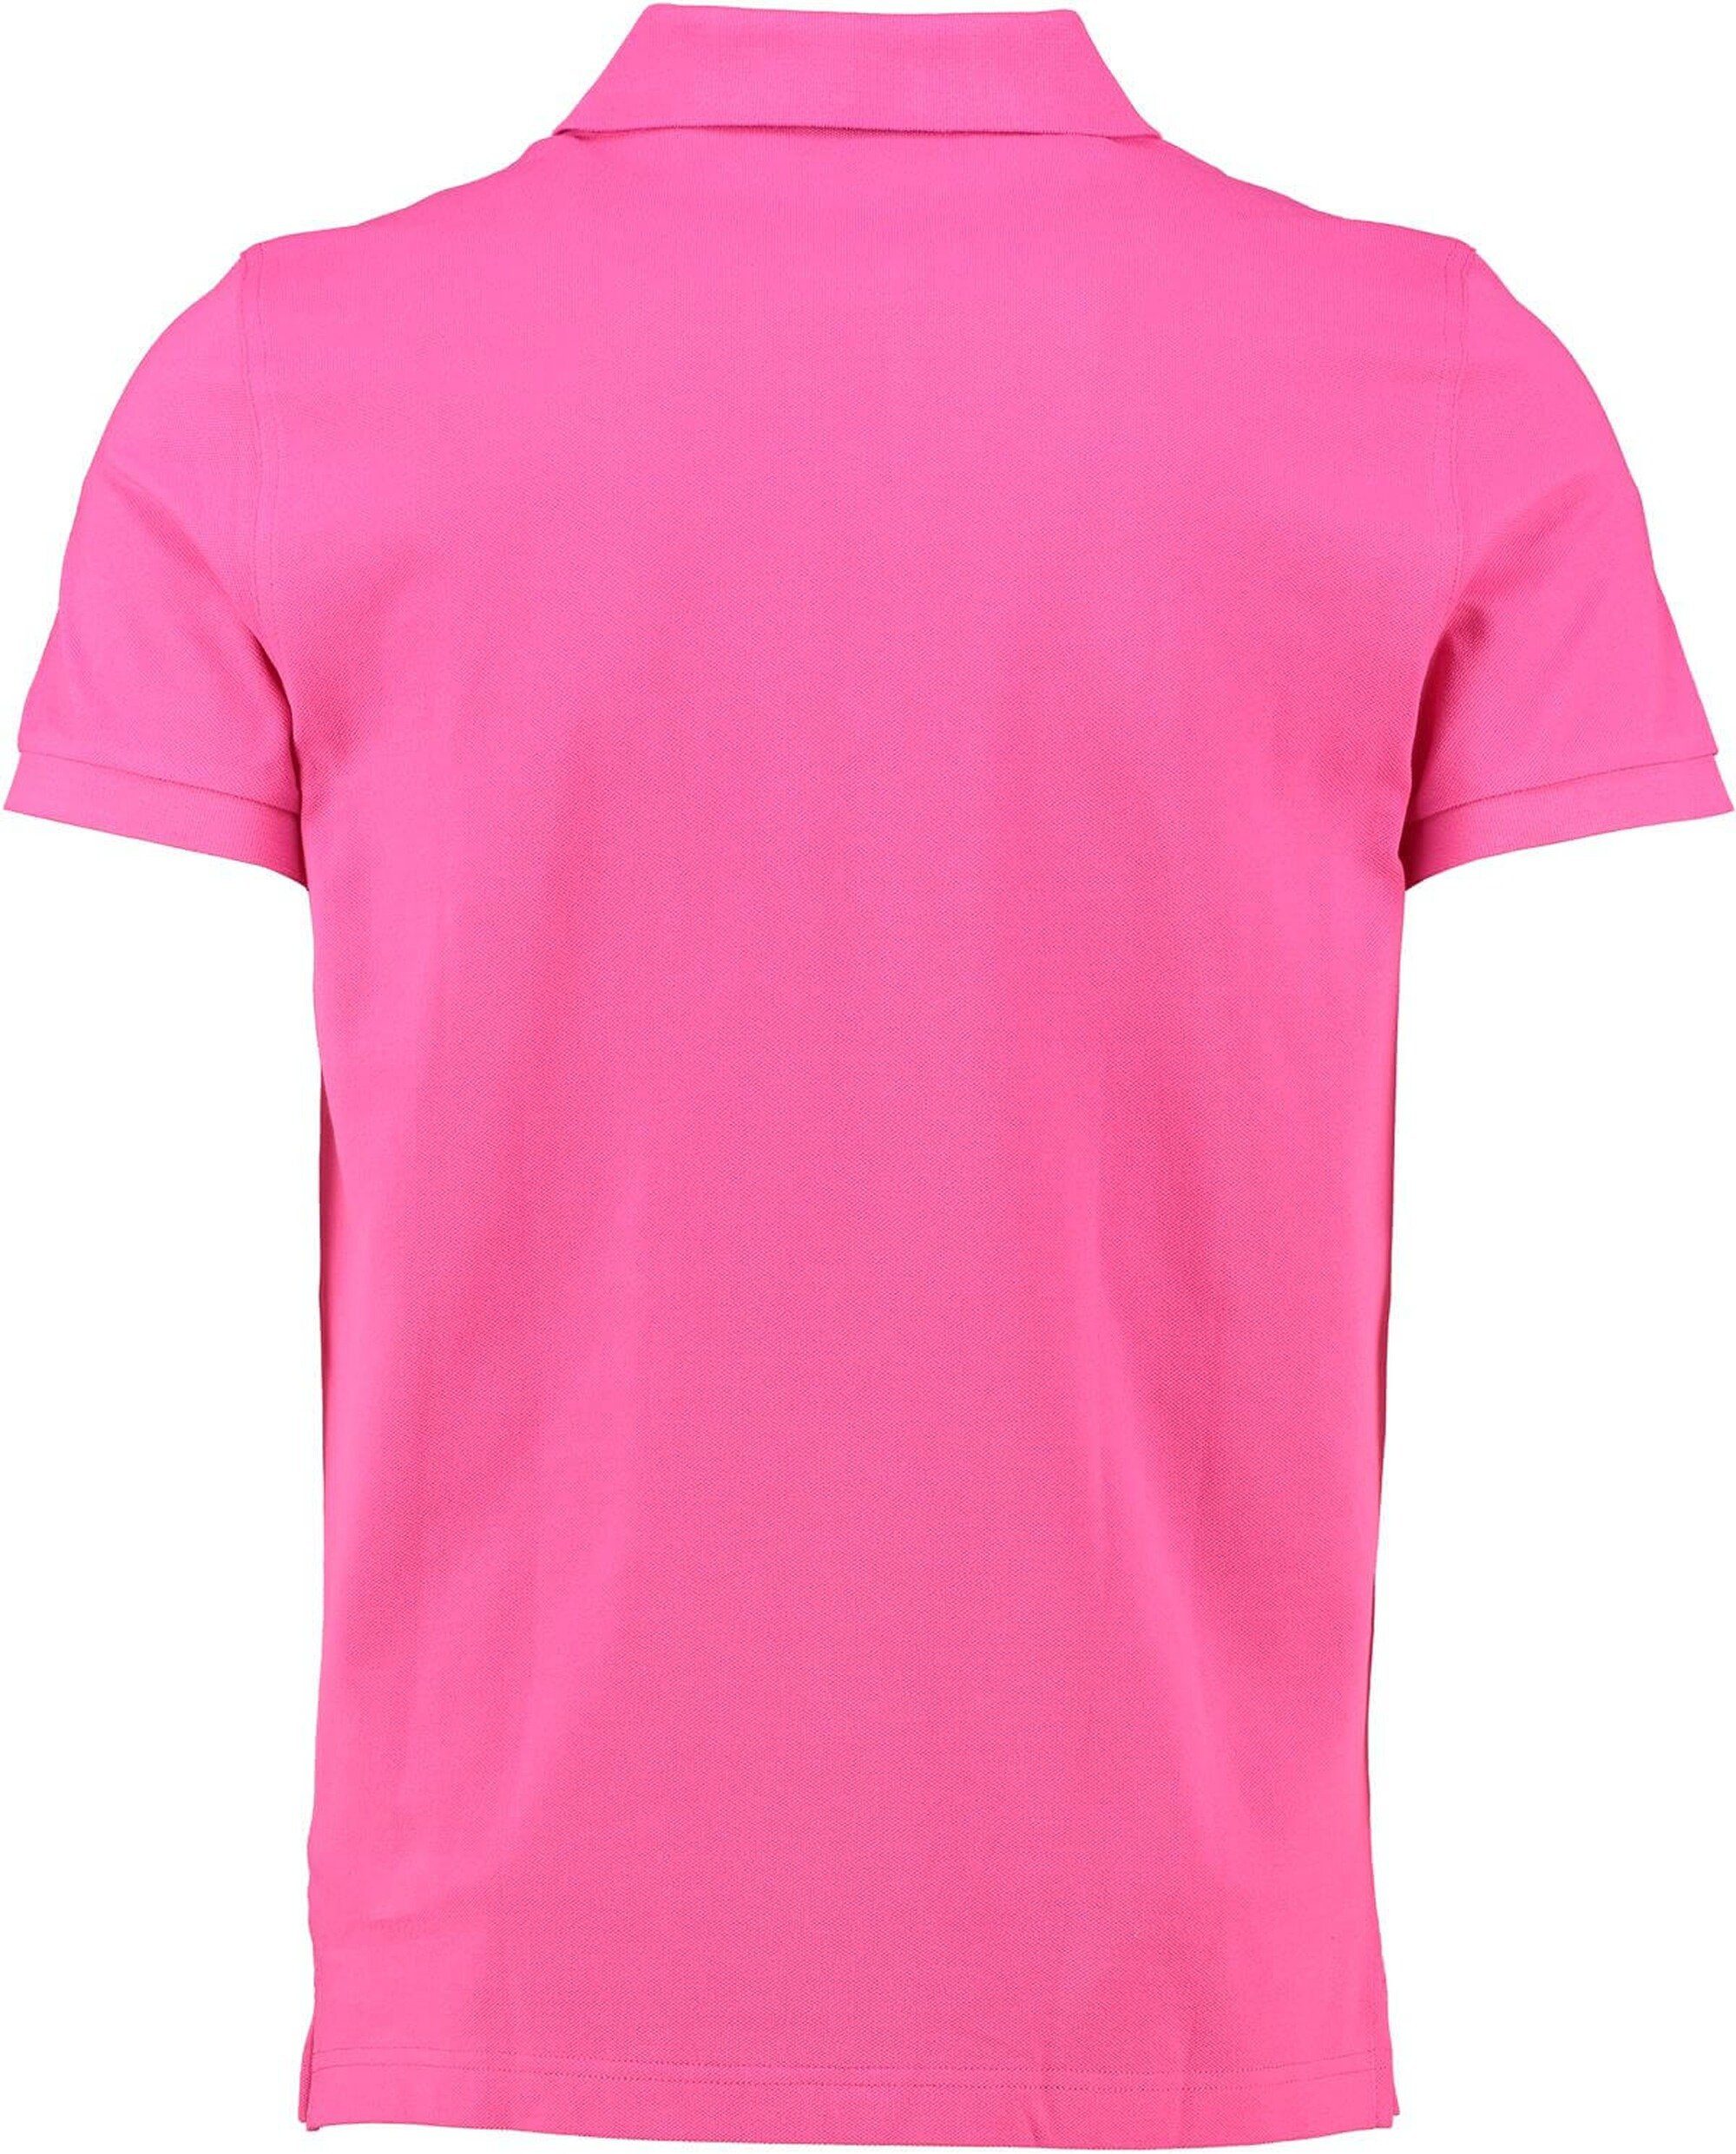 Rugger Gant Poloshirt hyper Polo-Shirt pink pink Original GANT